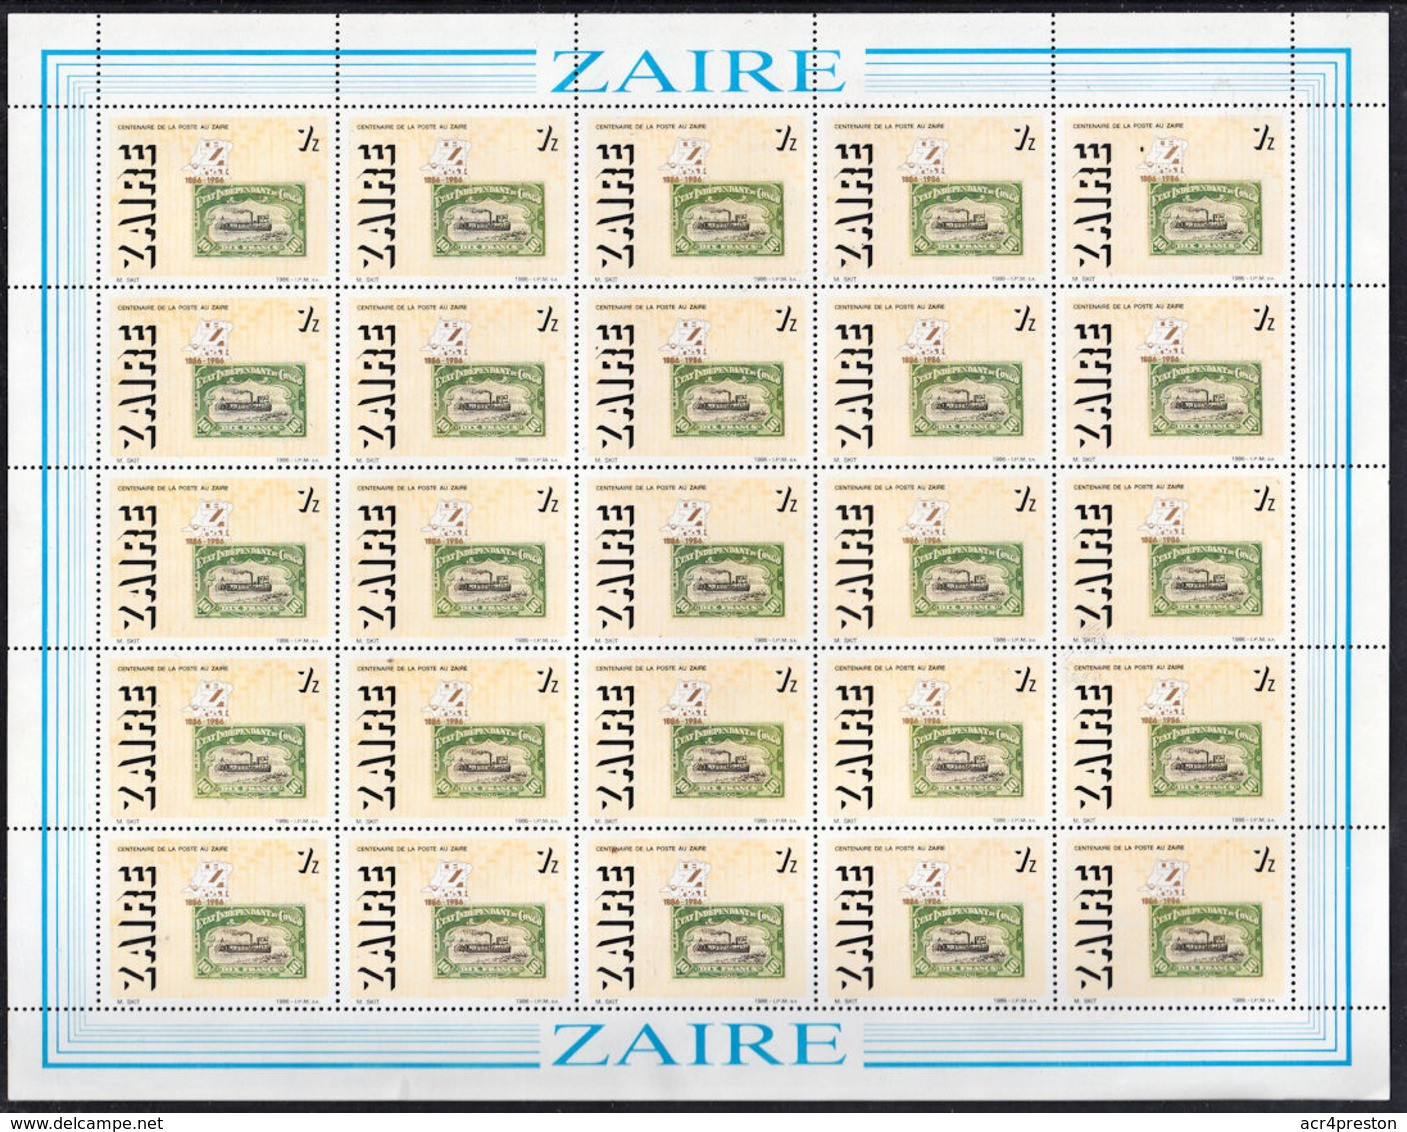 D0190 ZAIRE 1988, SG 1267 'Cenzapost' Stamp Centenary, Complete Sheet, MNH - Ongebruikt